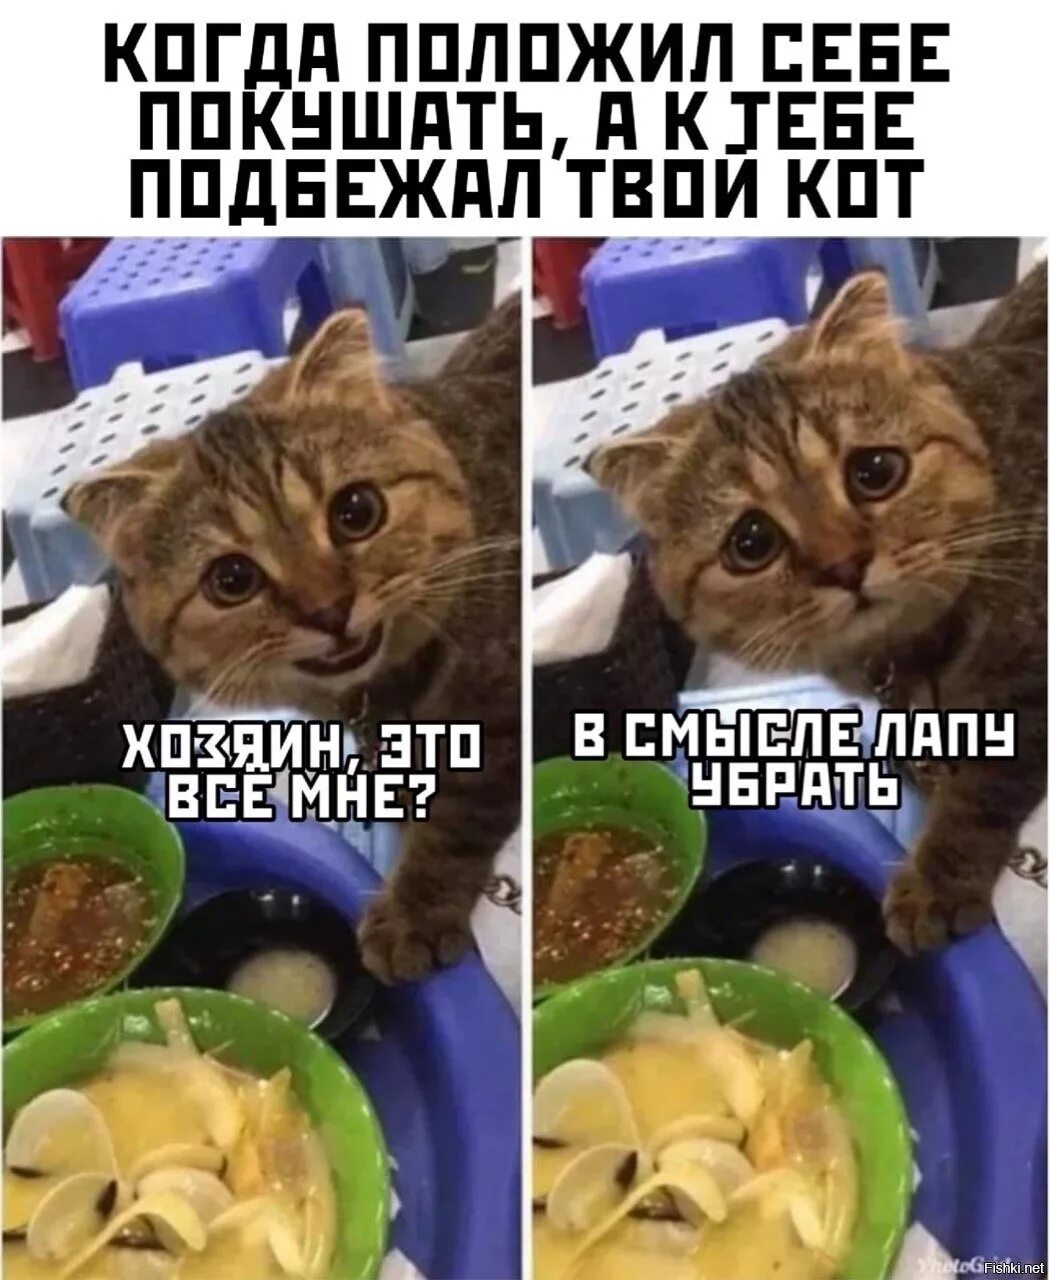 Дай на еду текст. Приколы с котами и едой. Мемы с котами и едой. Кот и еда. Коты еда мемы.